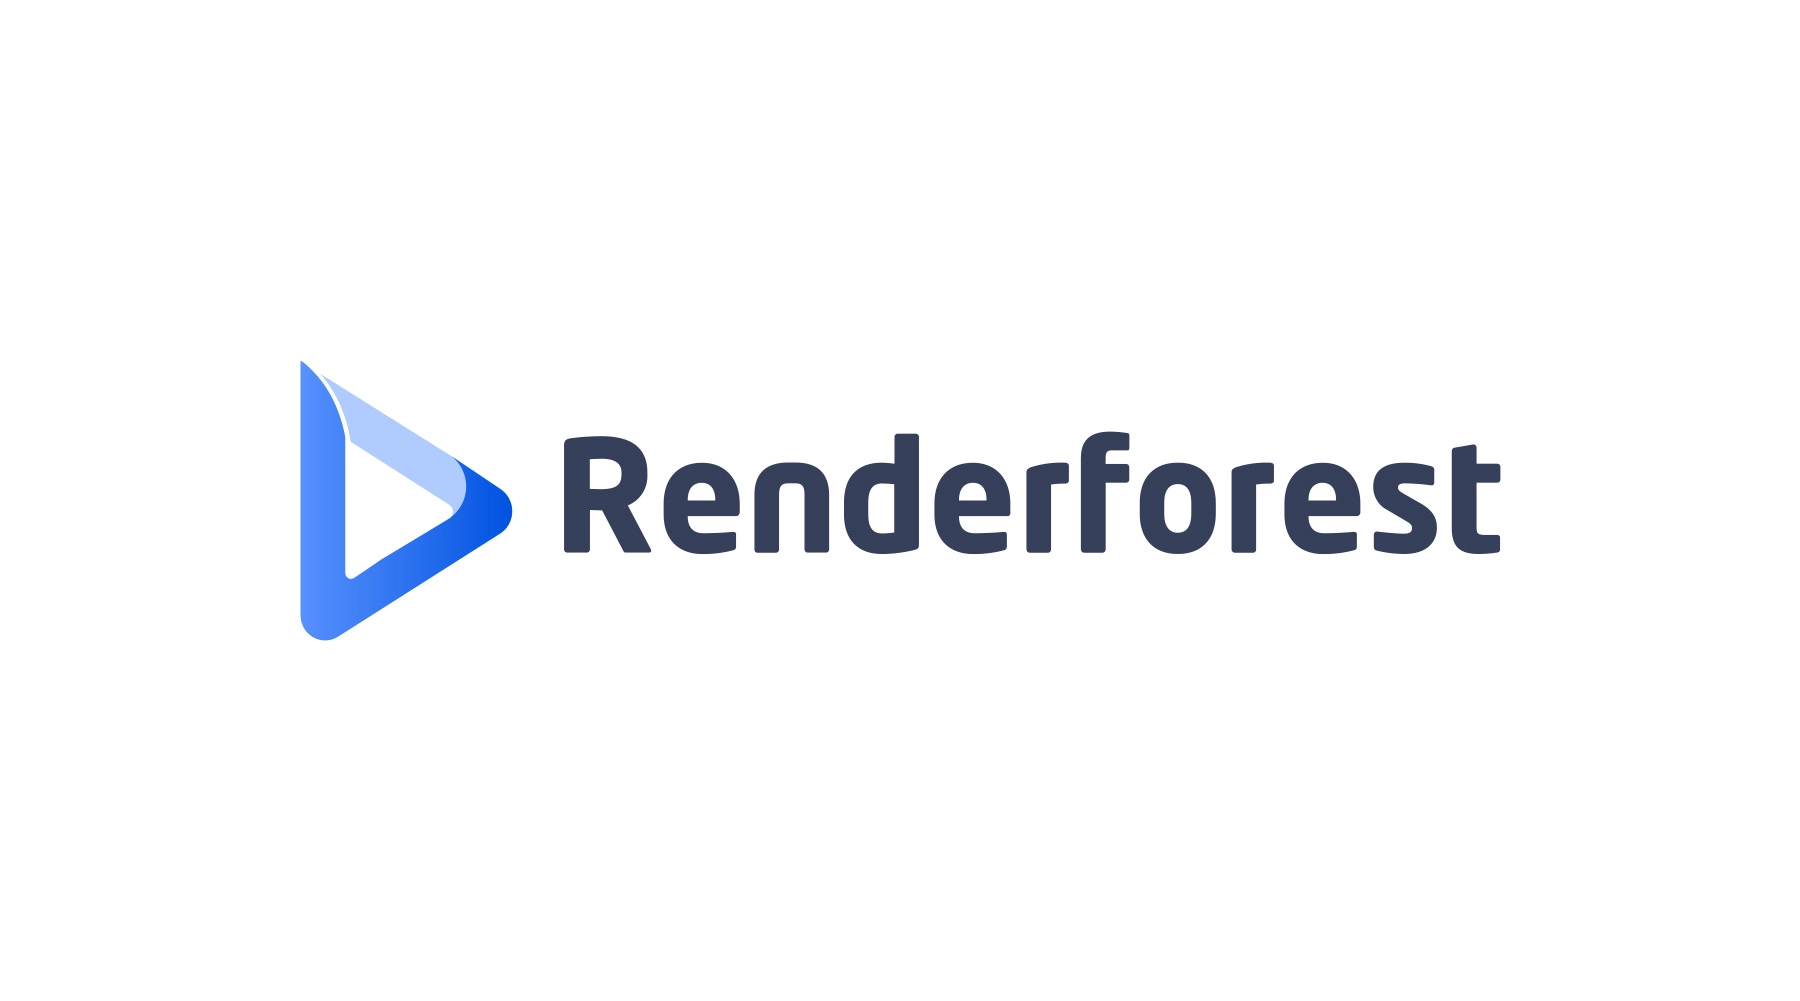 3532-renderforest-logo2.jpg